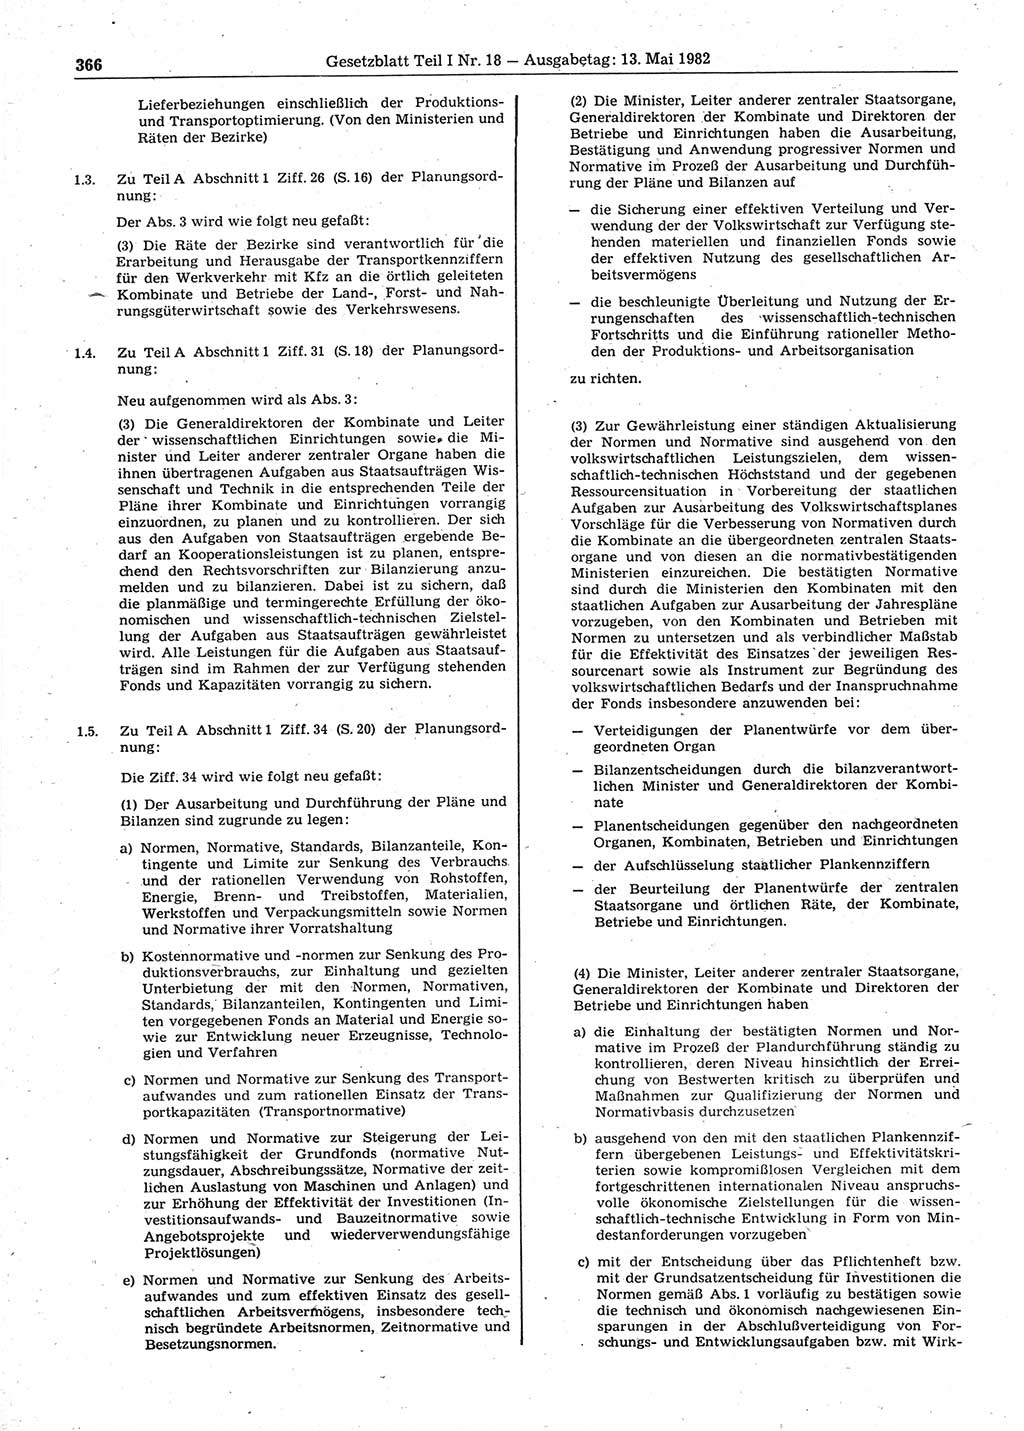 Gesetzblatt (GBl.) der Deutschen Demokratischen Republik (DDR) Teil Ⅰ 1982, Seite 366 (GBl. DDR Ⅰ 1982, S. 366)